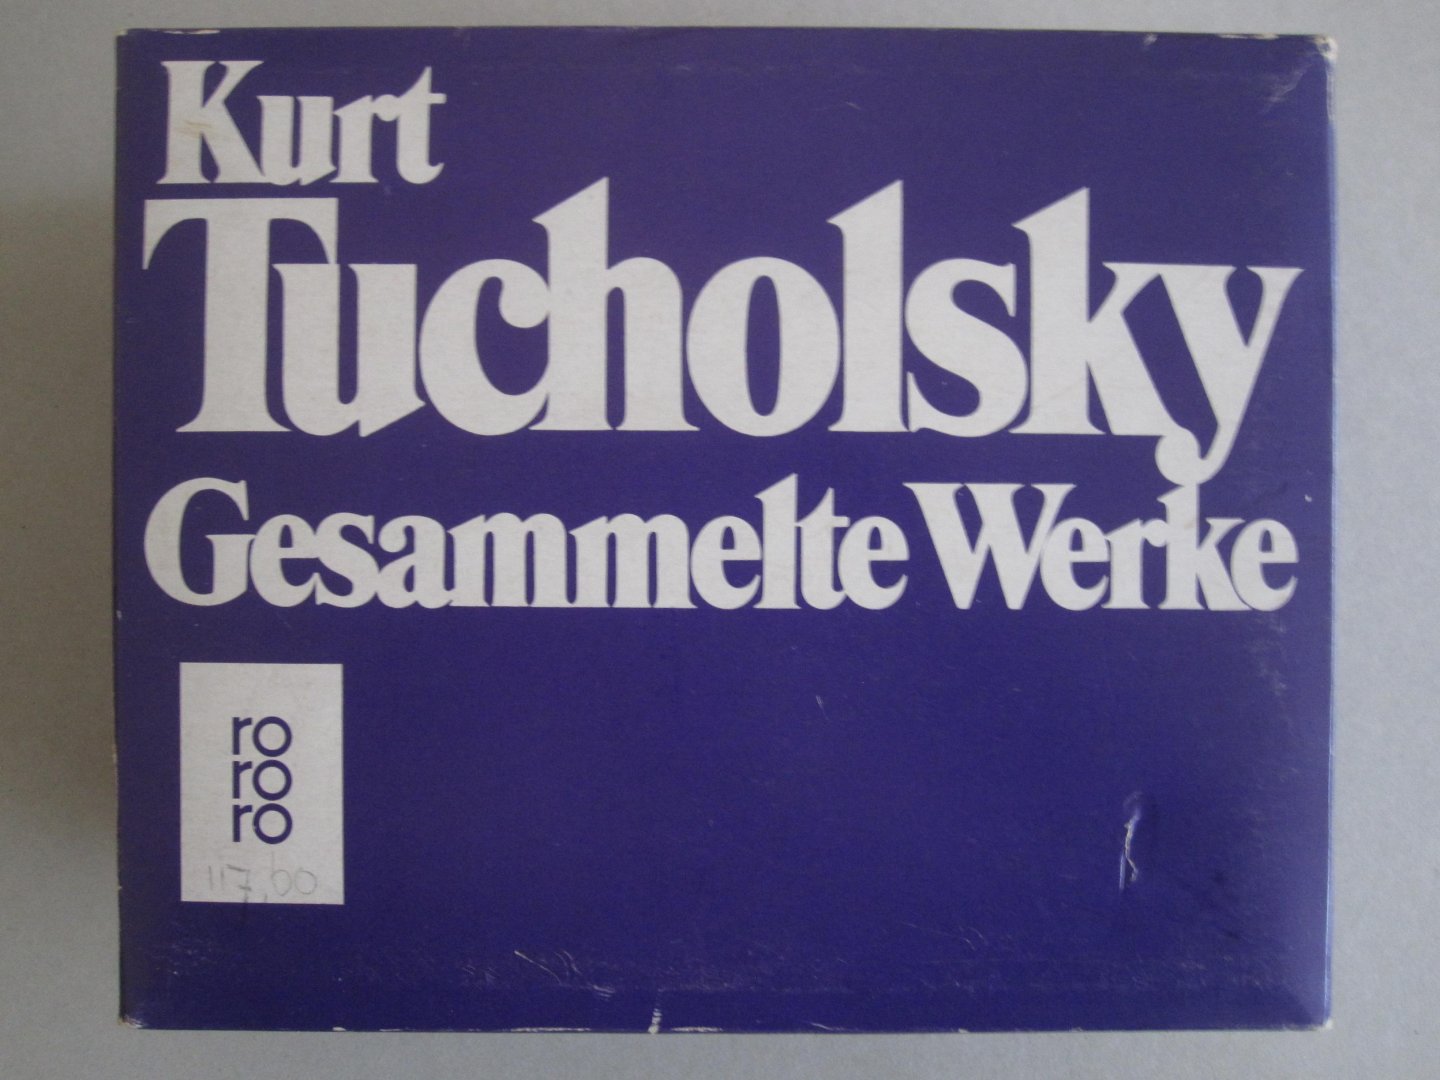 Kurt Tucholsky - Gesammelte Werke (10 volumes)